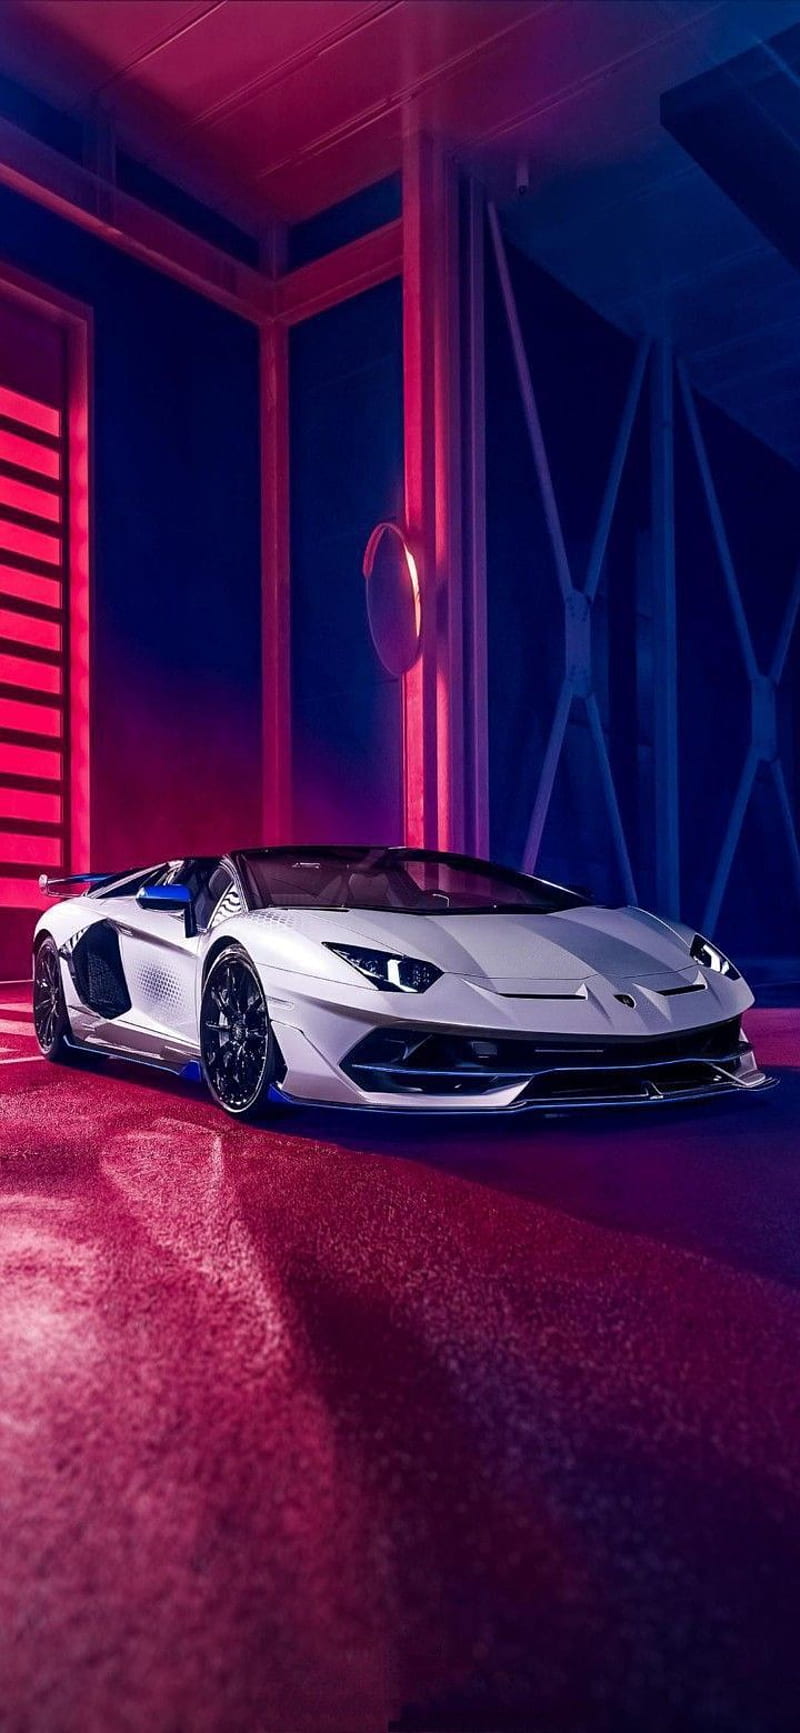 Siêu xe Lamborghini: Đắm mình trong thế giới tốc độ cùng siêu xe Lamborghini. Không chỉ sở hữu tốc độ \